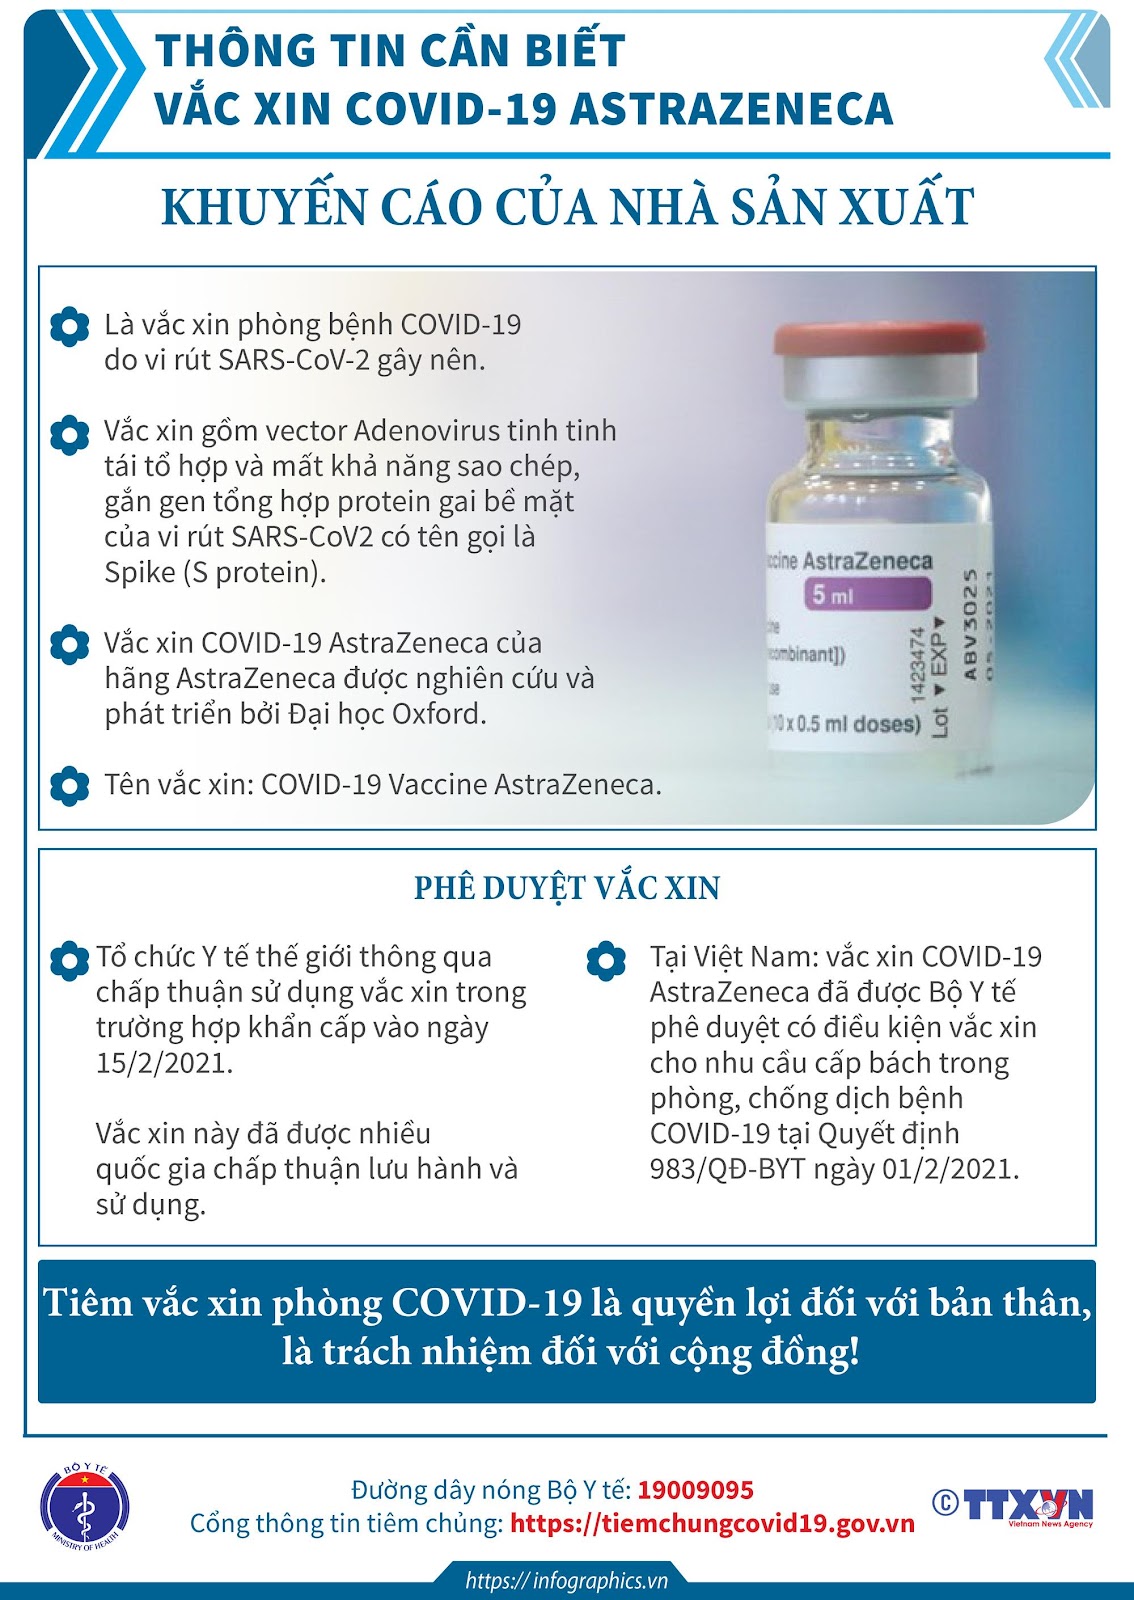 Thông tin cơ bản về Vaccine AstraZeneca